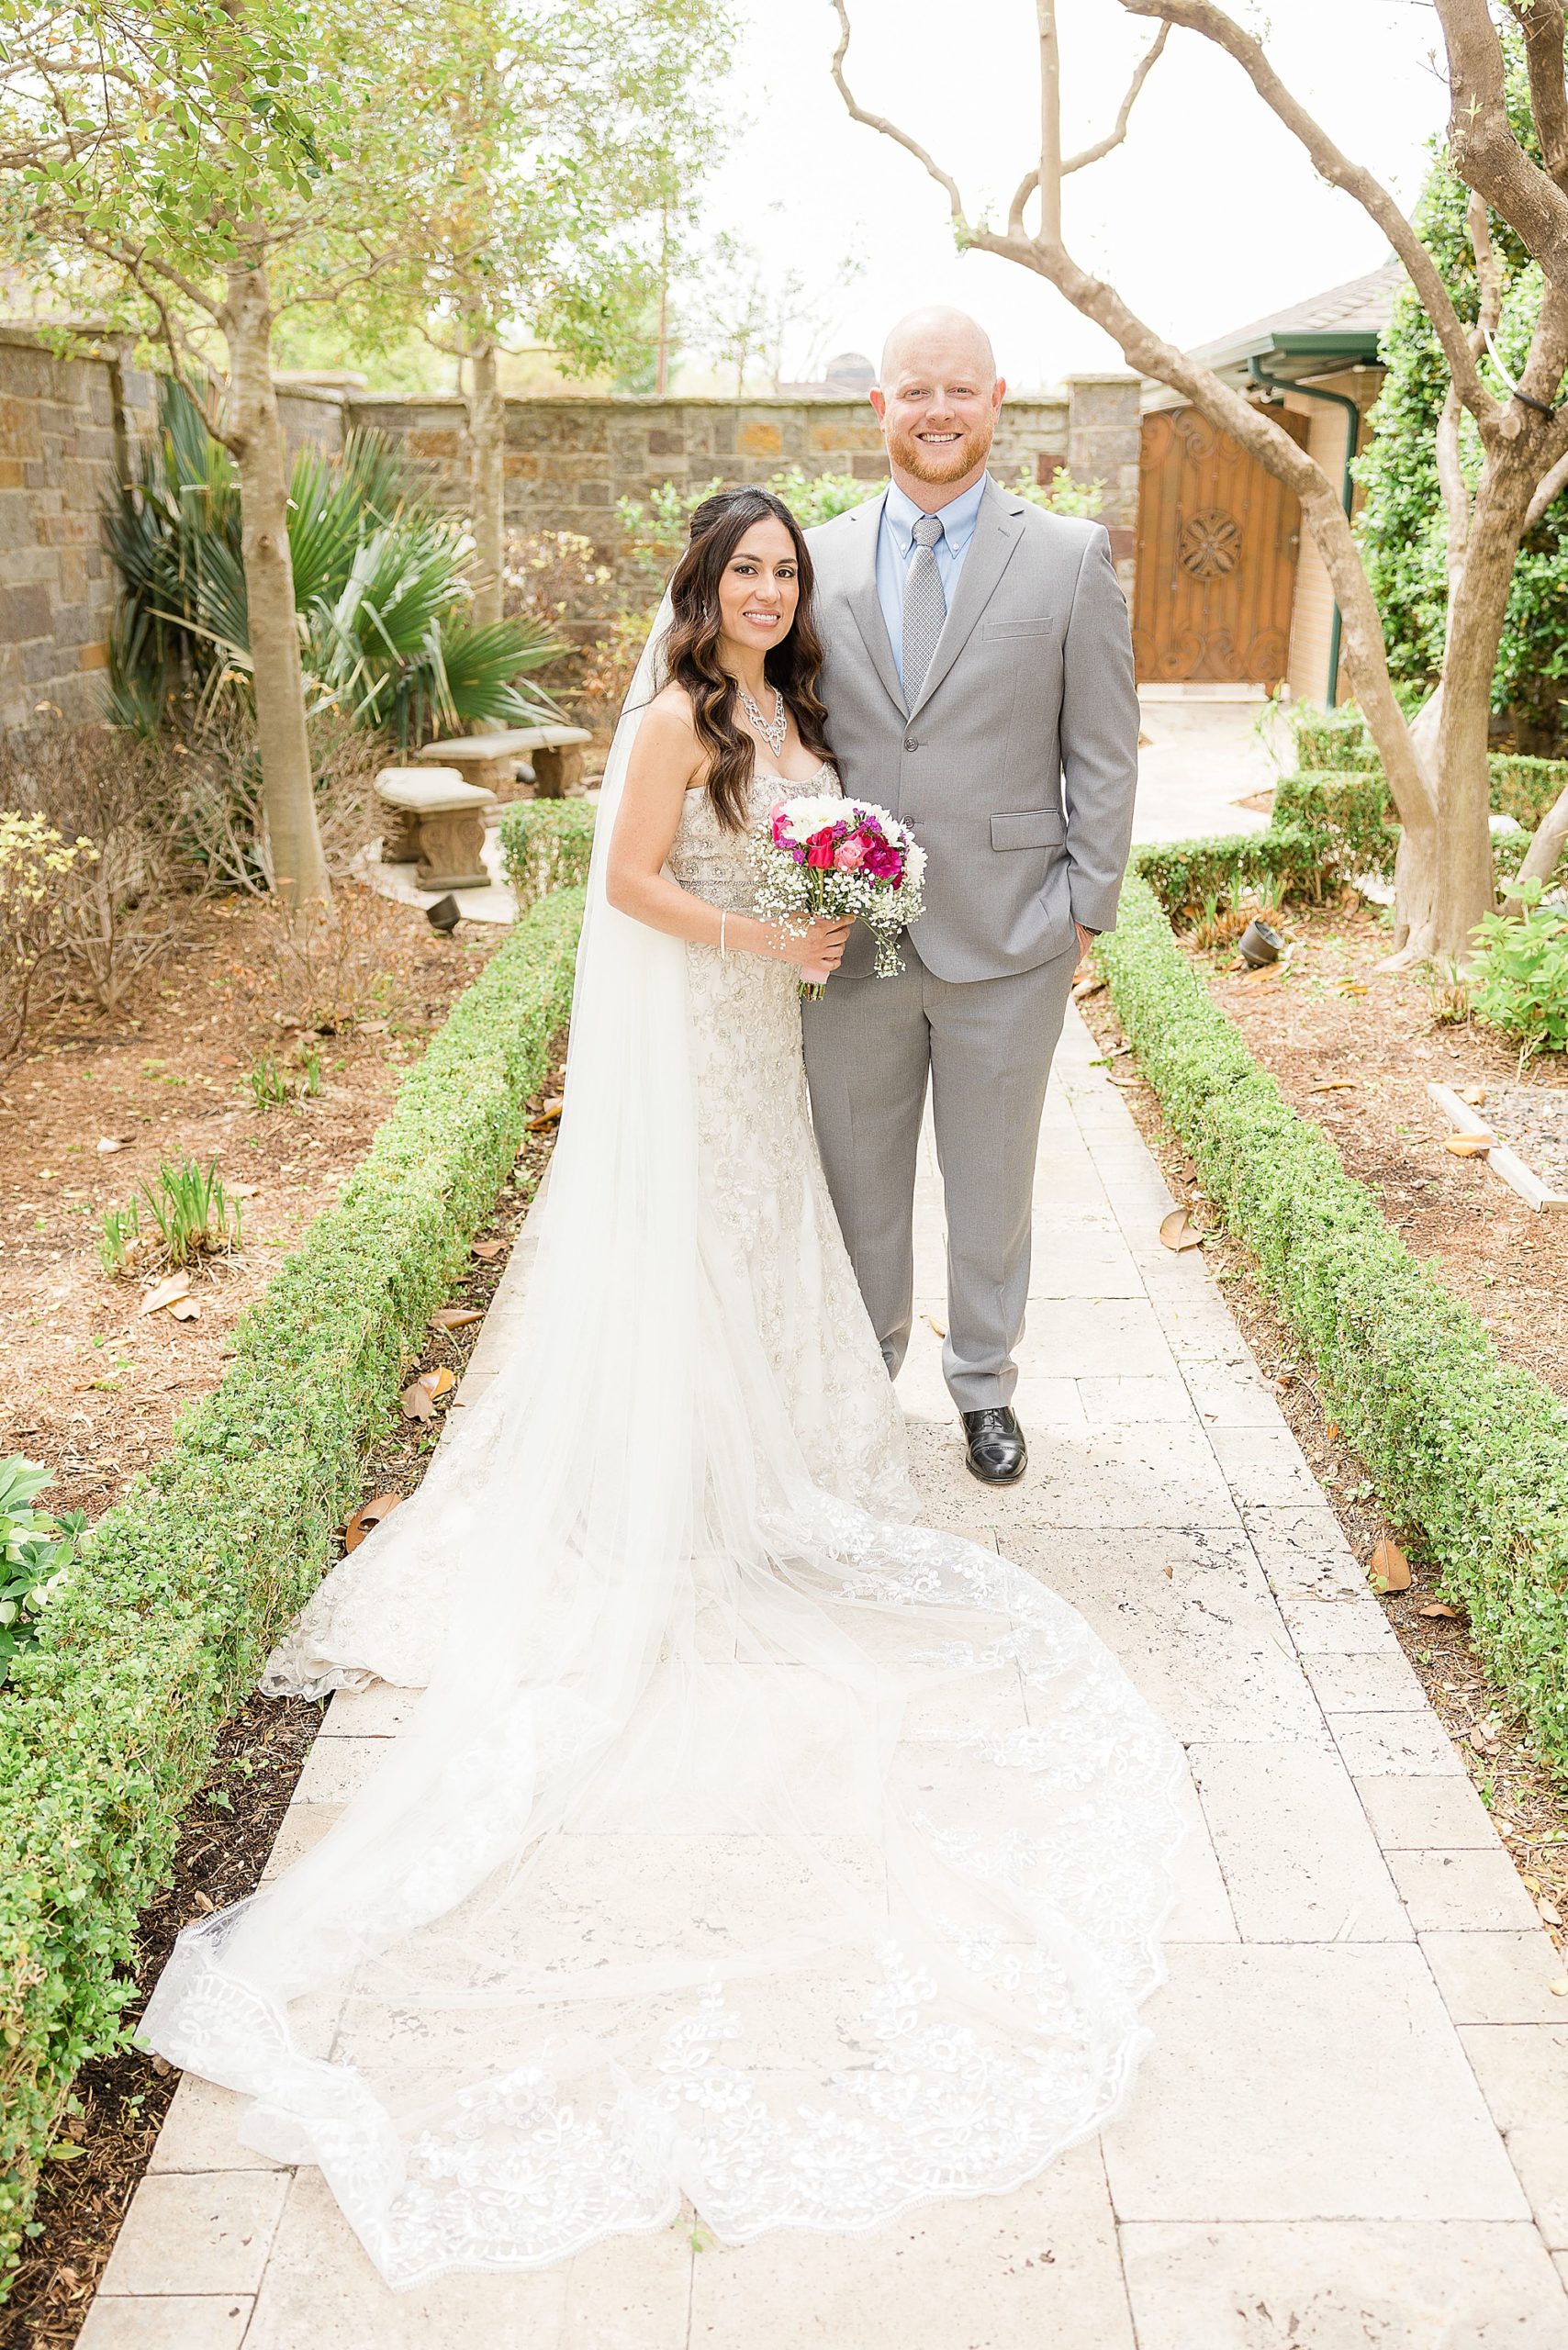 Texas bride and groom pose in church garden